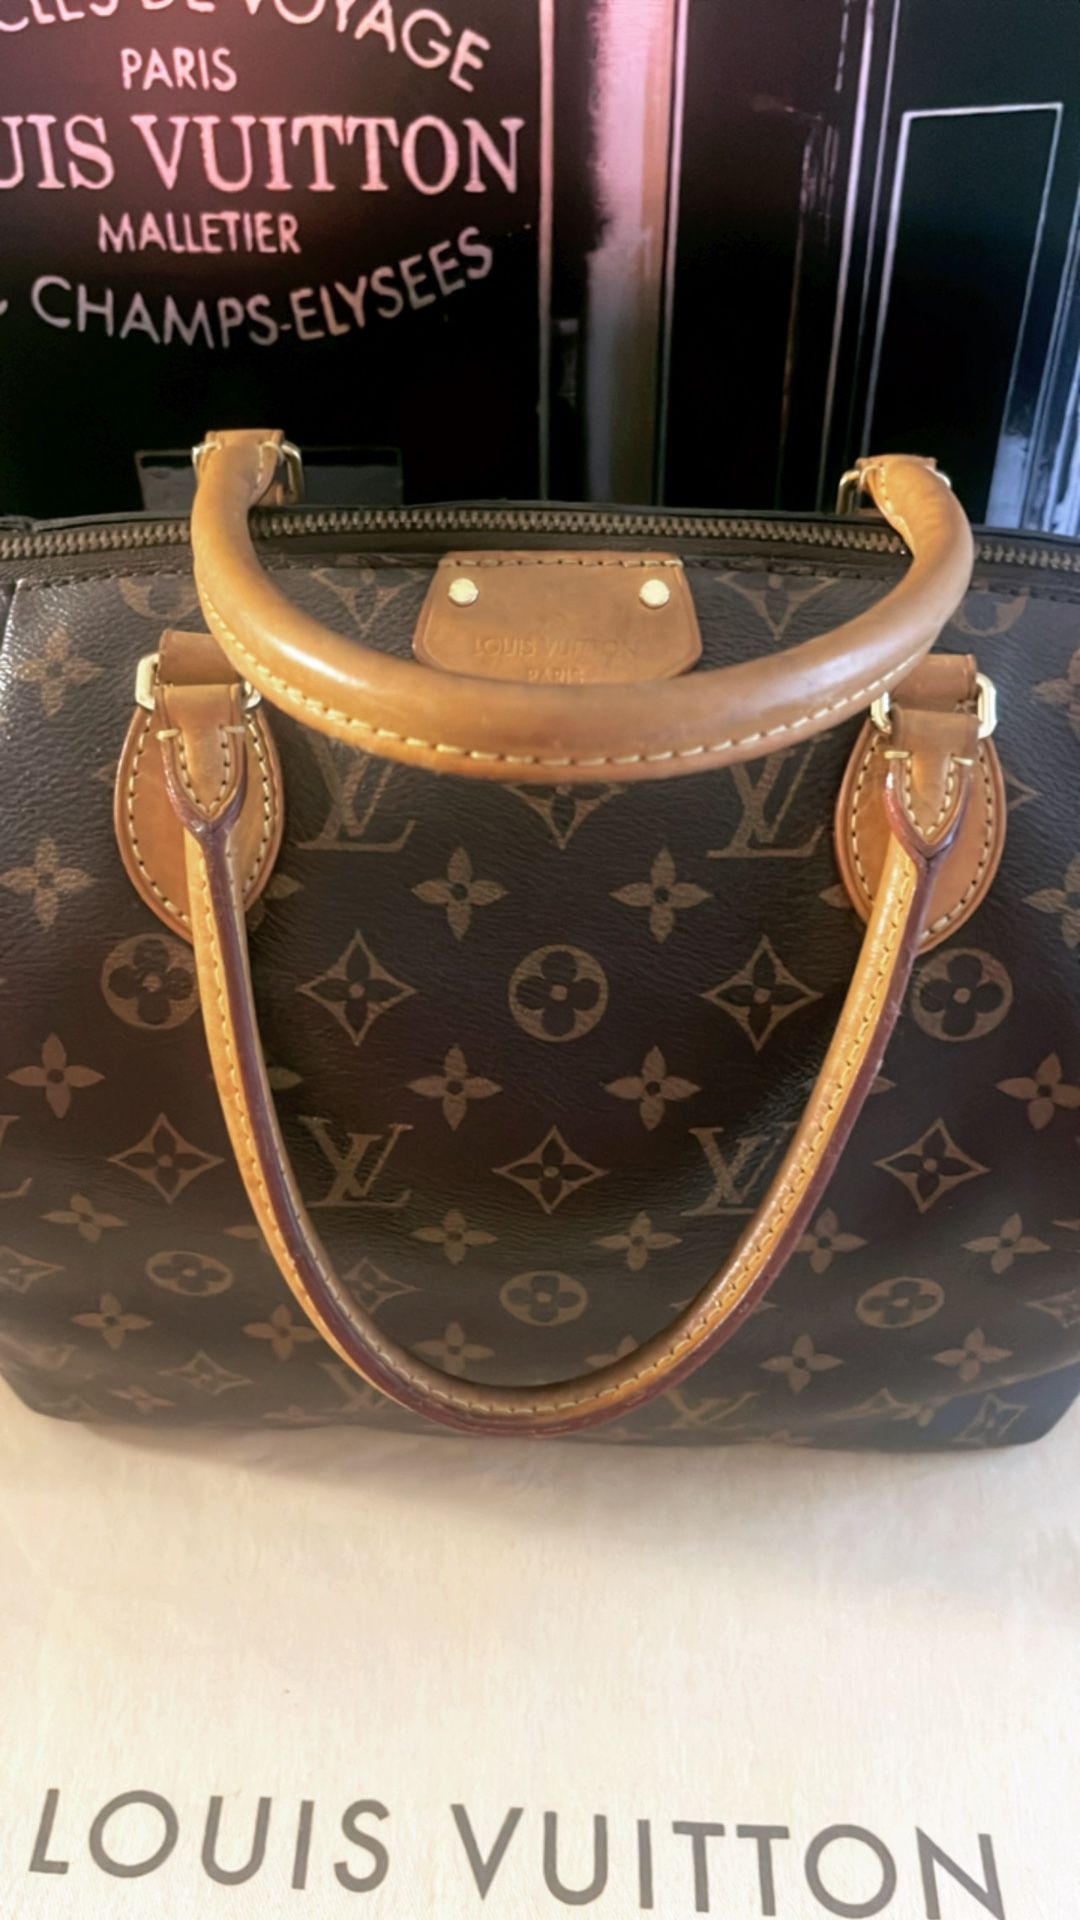 Authentic Louis Vuitton Turenne MM Shoulder Bag